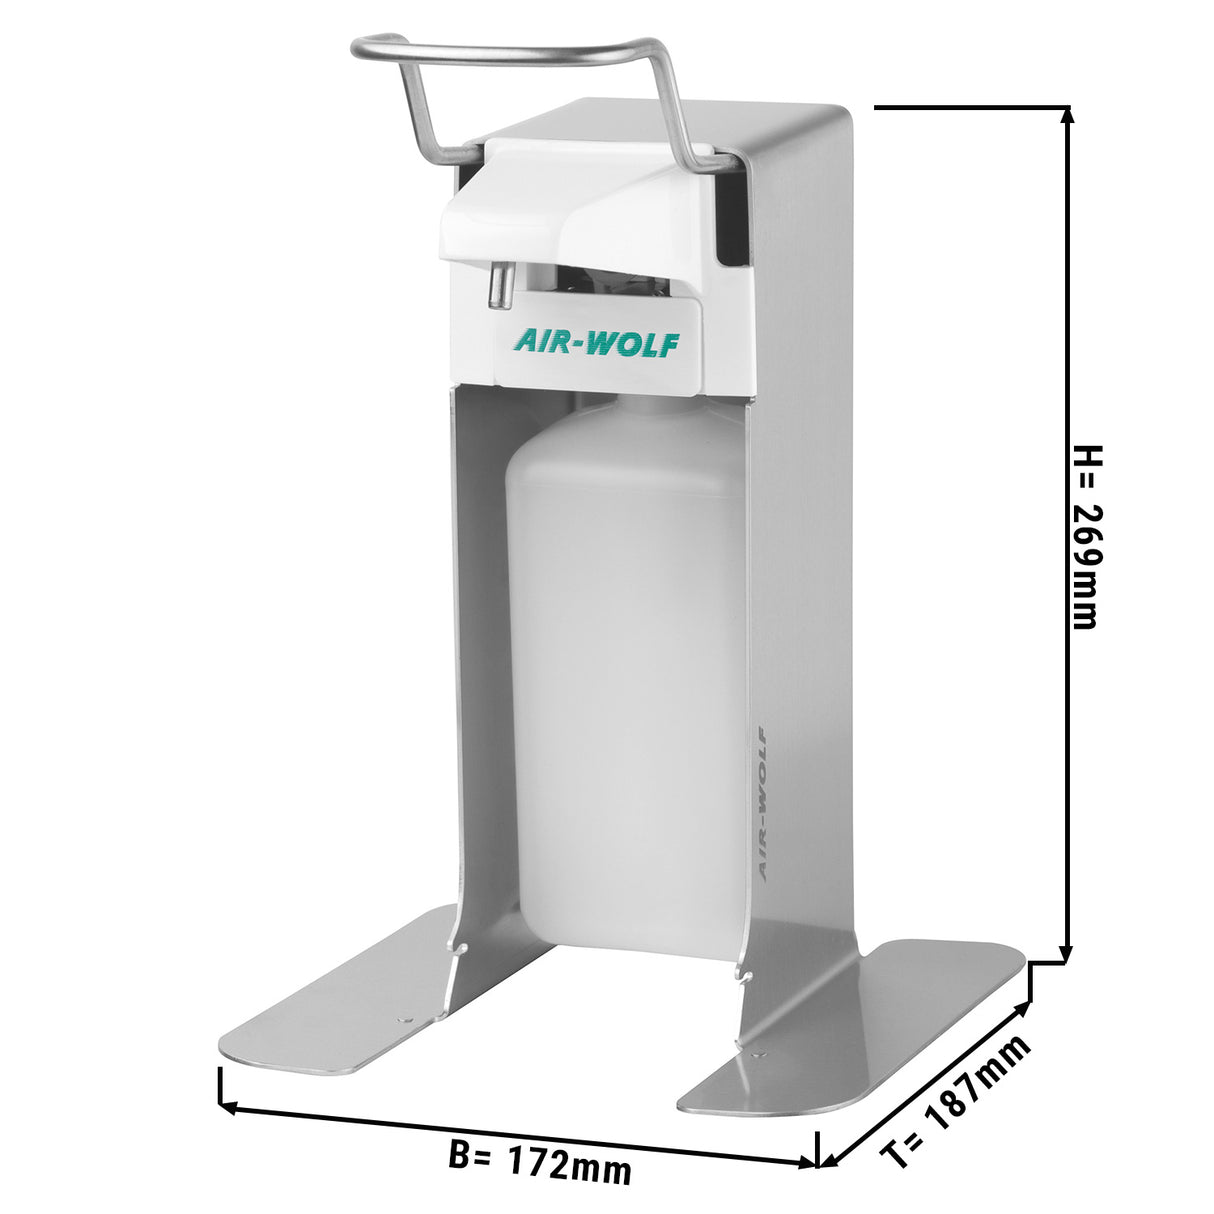 AIR-WOLF - Dispenser med sæbe og desinfektionsmiddel med betjeningshåndtag - 500 ml - fritstående enhed